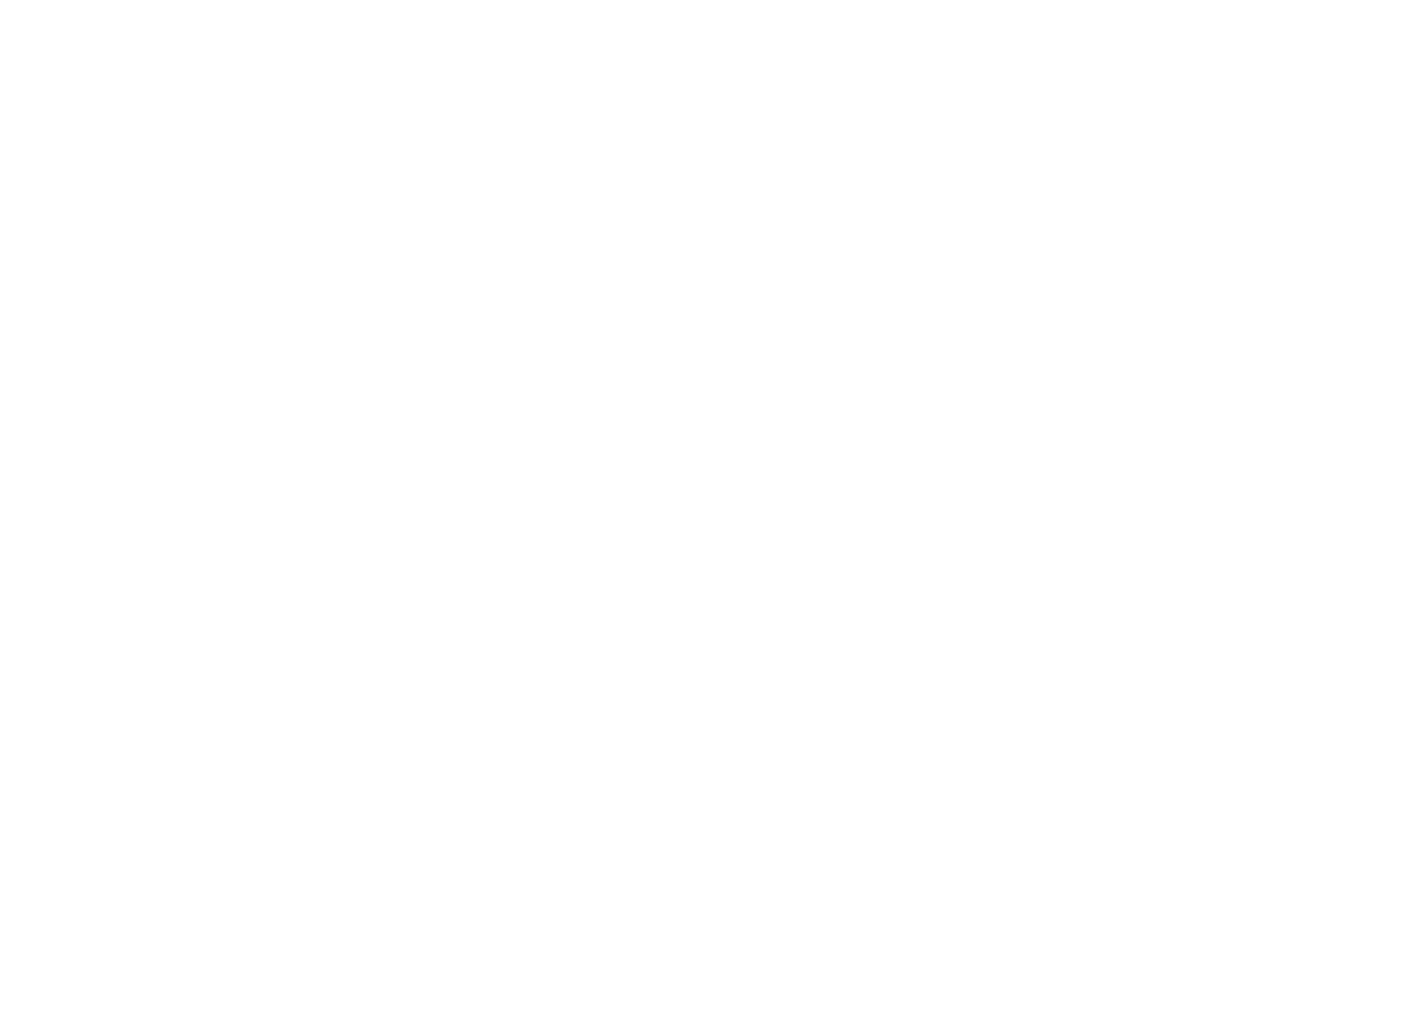 Espoir Basket Quimper Cornouaille